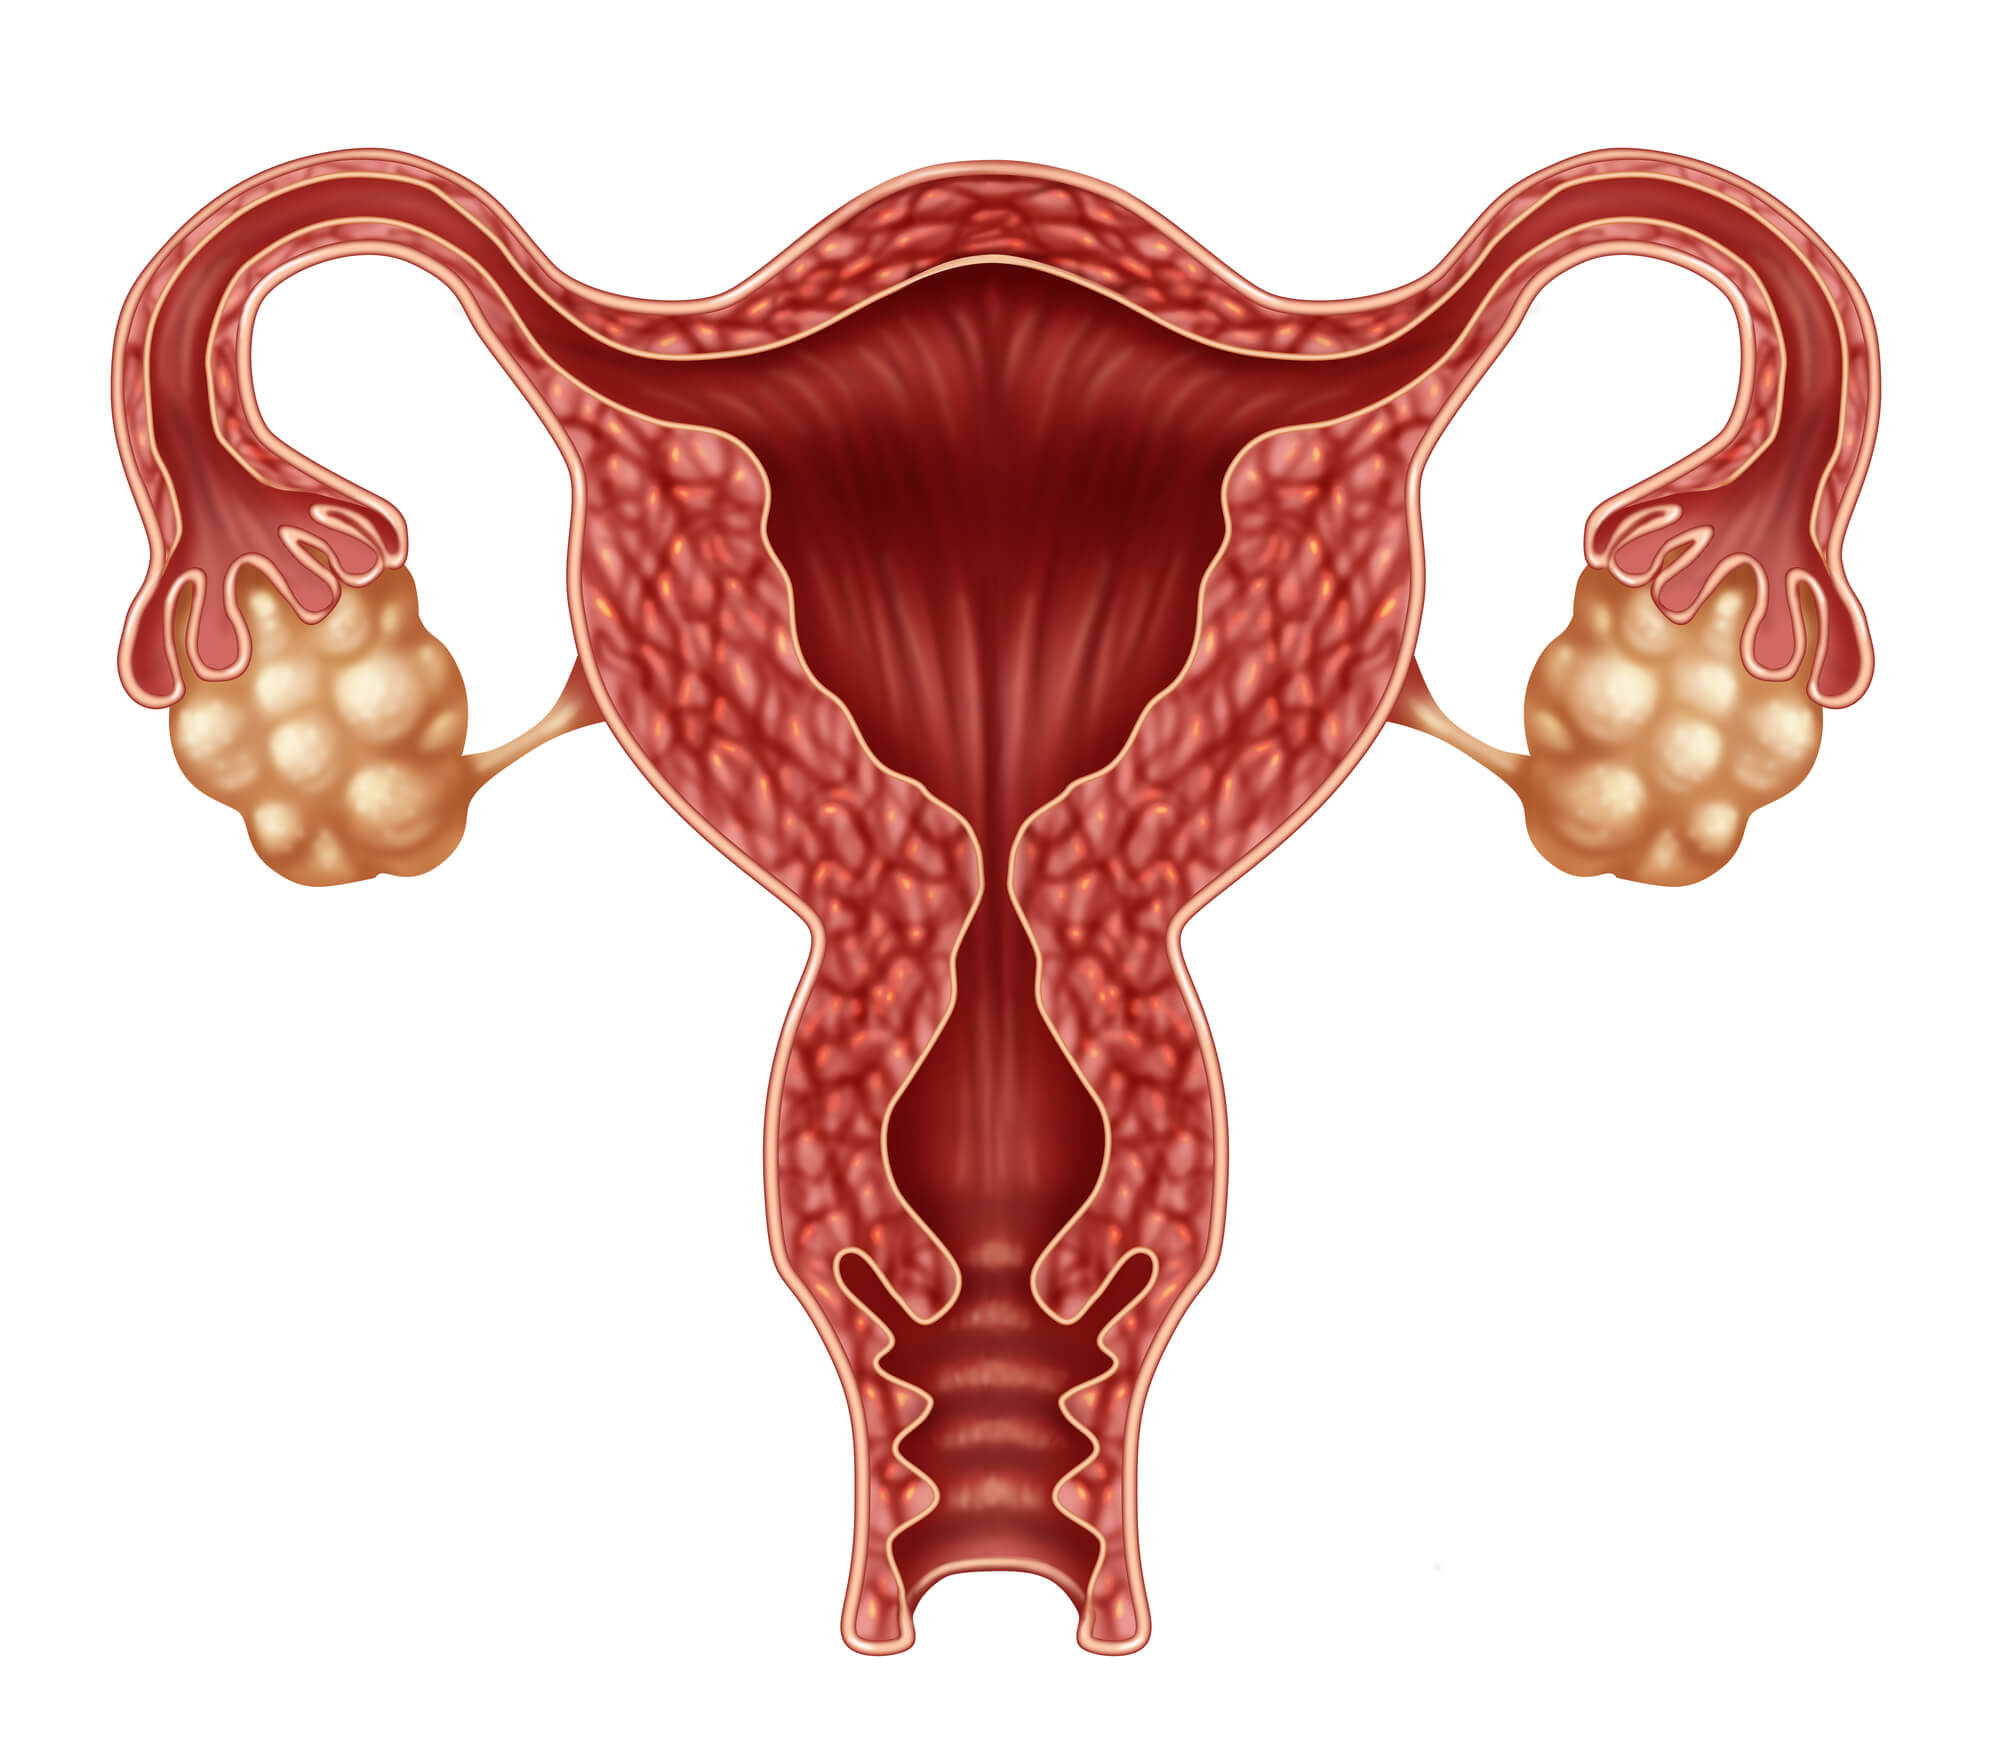 卵巢功能检查包括哪些